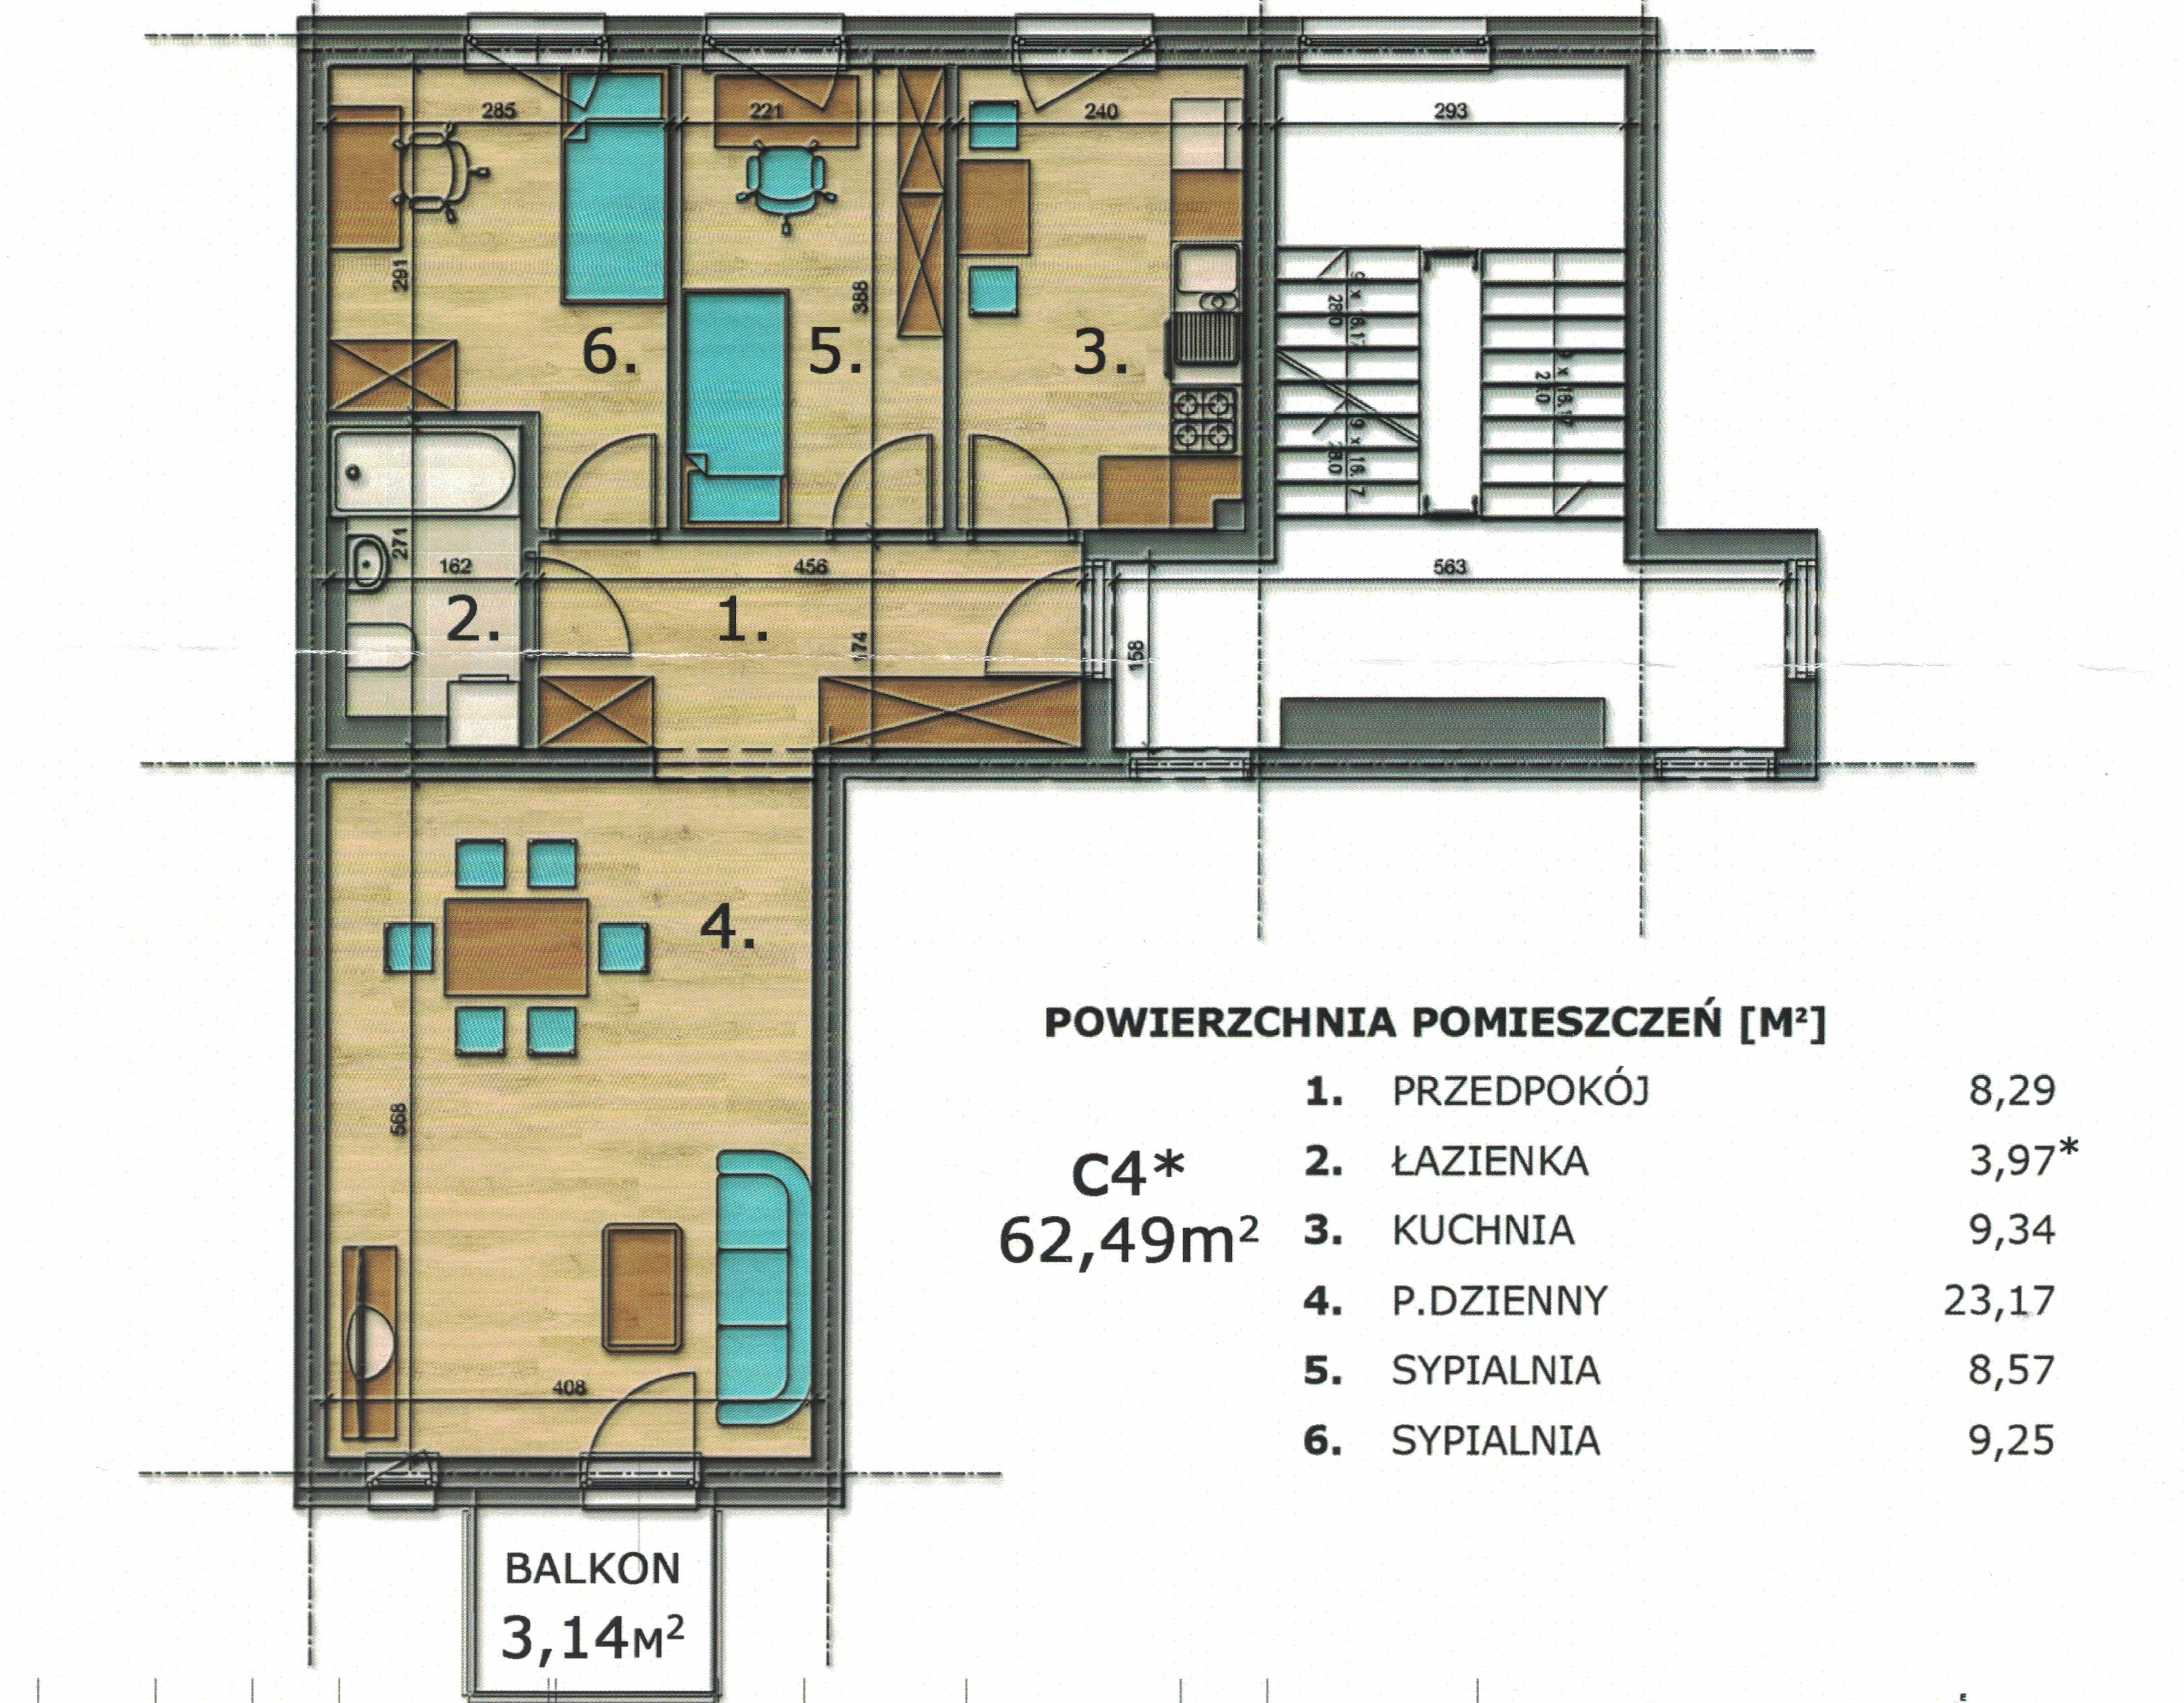 635 000 zł mieszkanie (3 pok. kuchnia, piwnica + m. postojowe)